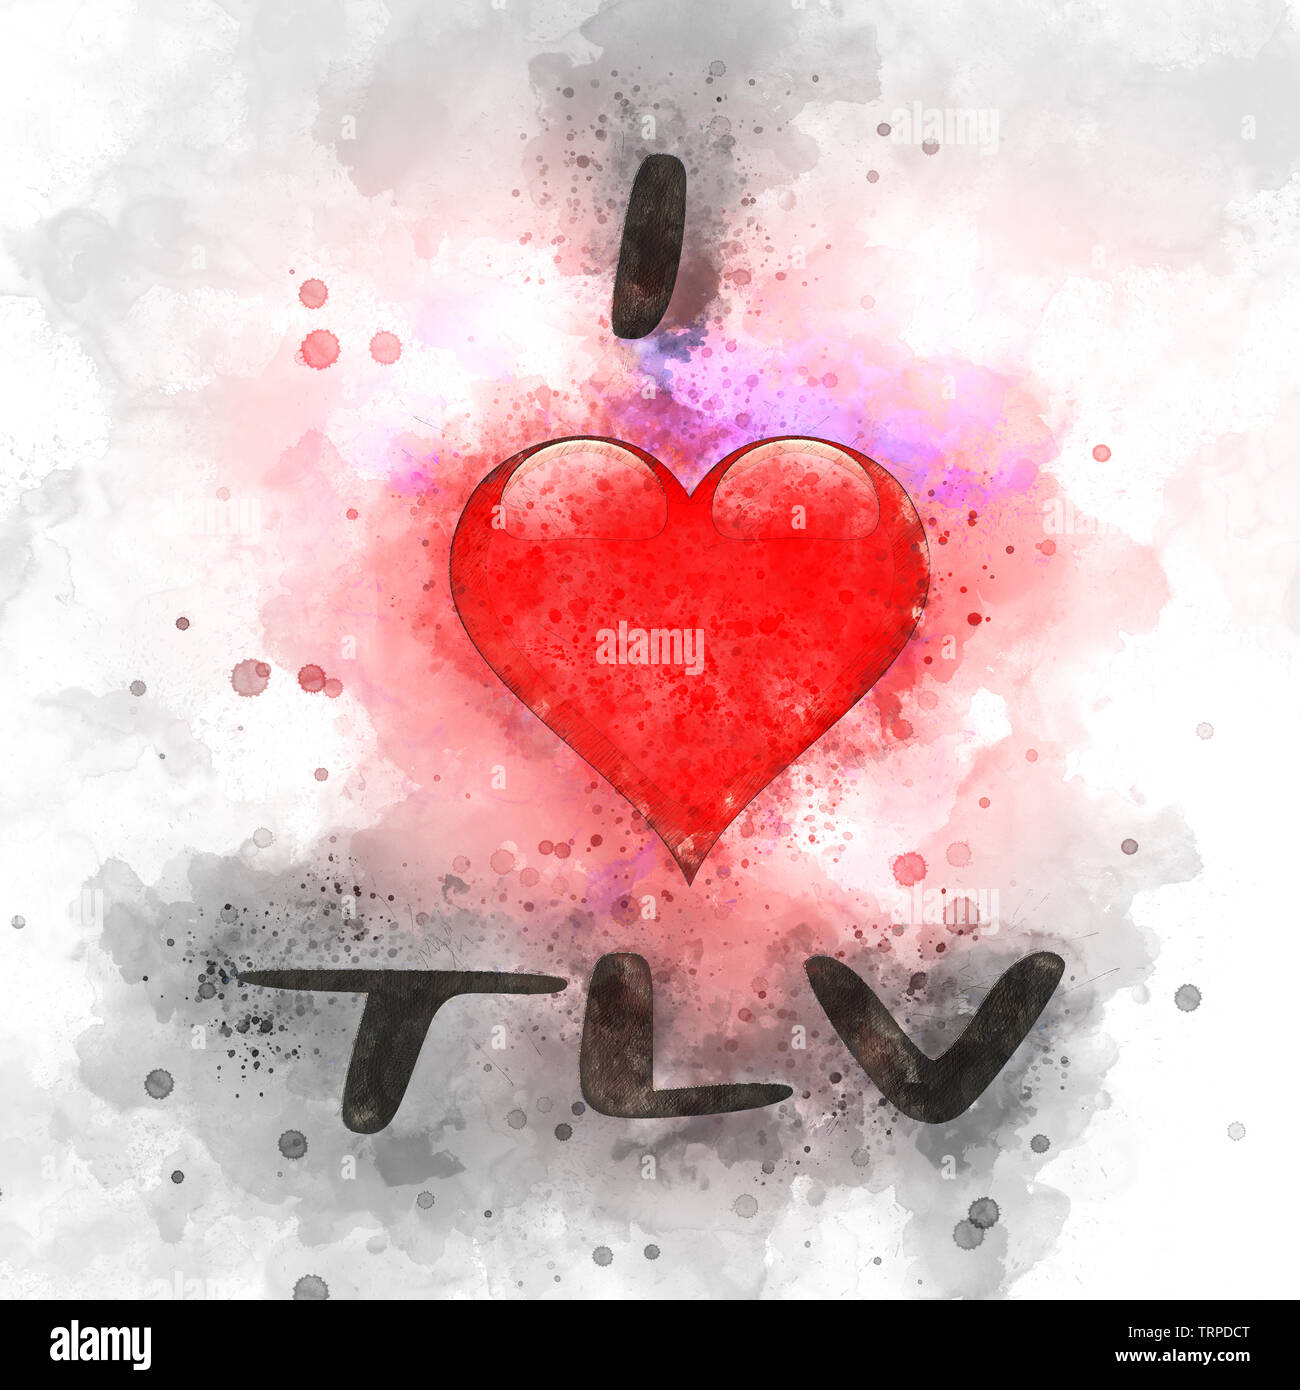 Migliorate digitalmente immagine di io amo TLV (Tel Aviv, Israele) con una a forma di cuore e la grafica di sfondo colorato Foto Stock